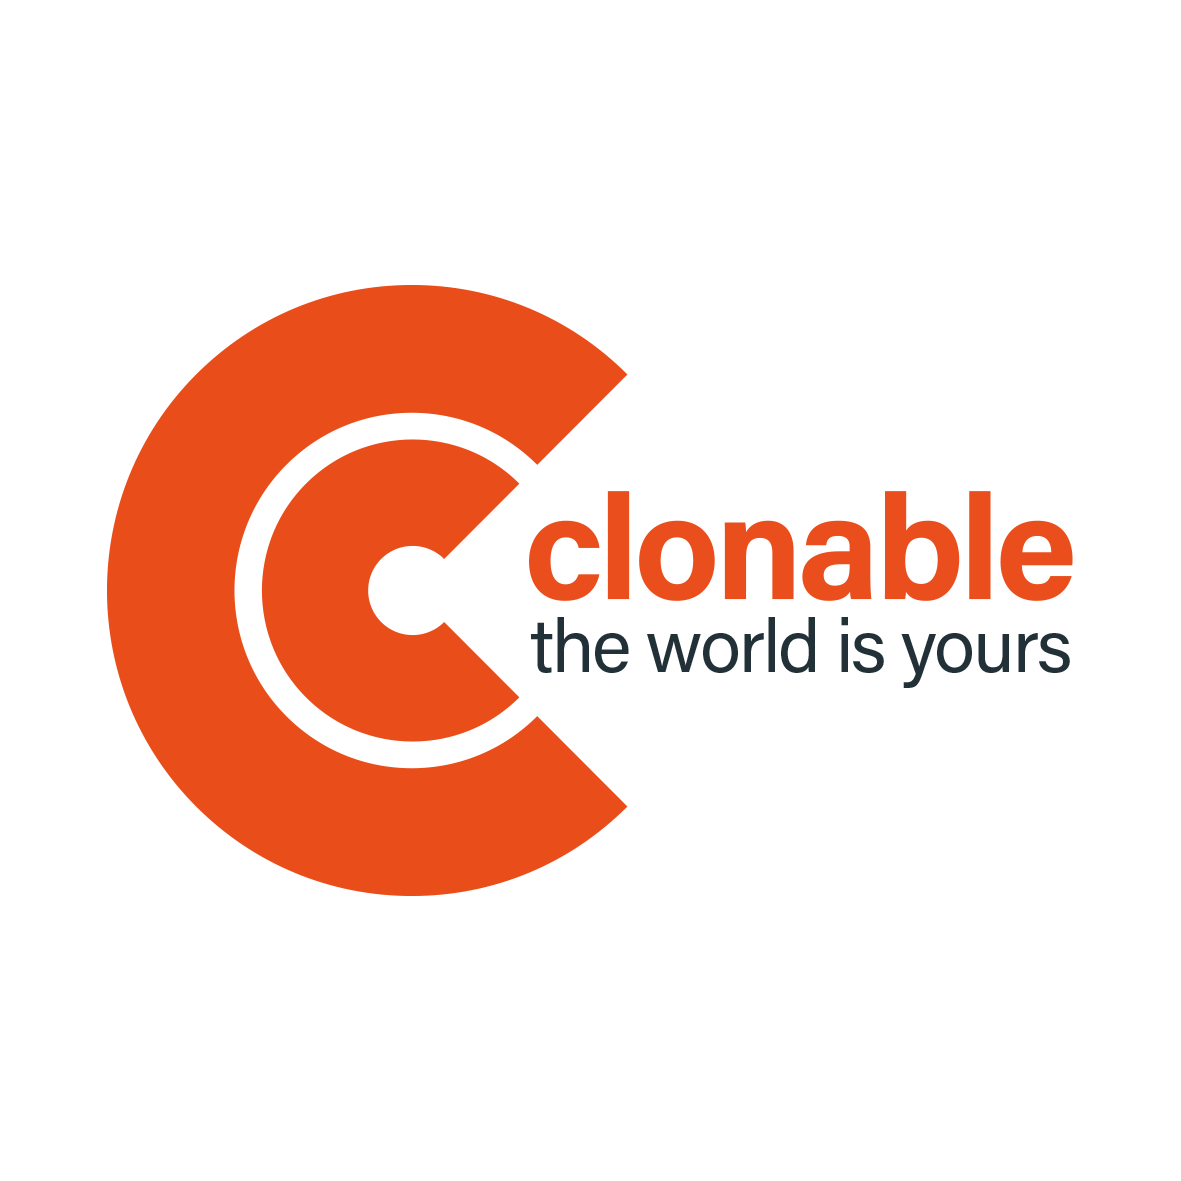 Clonable sloganlı logo açık arka plan